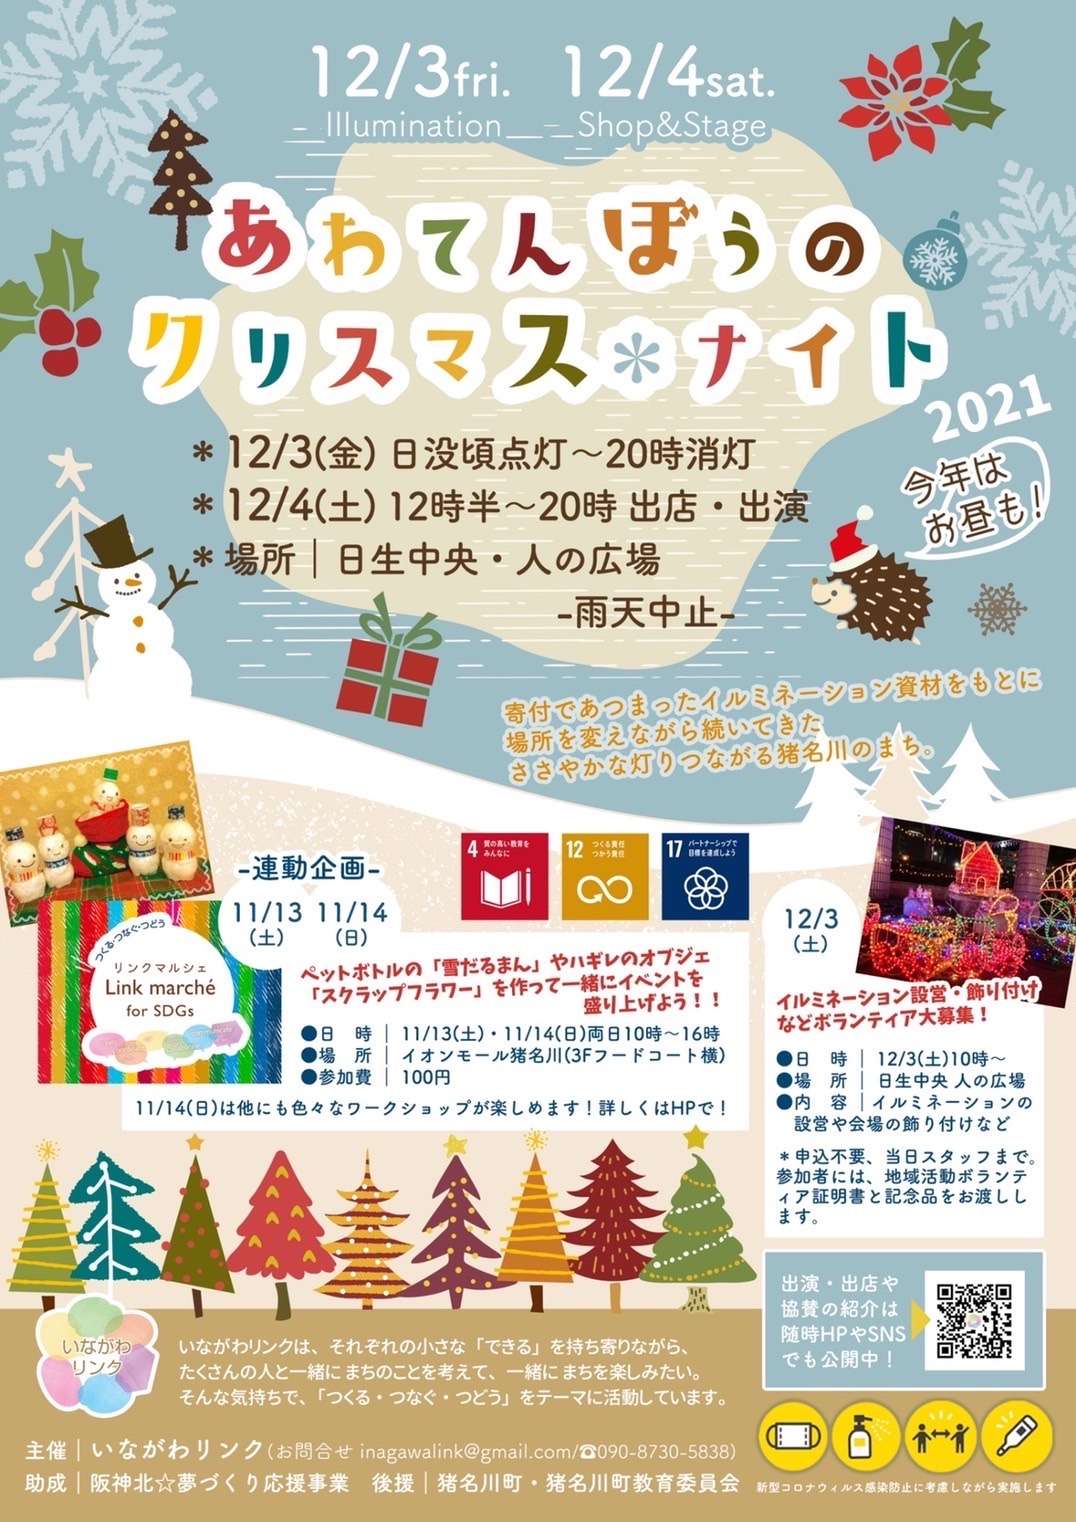 ☆12月4日(土)兵庫県猪名川で「あわてんぼうのクリスマスナイト」に出展させていただきます☆